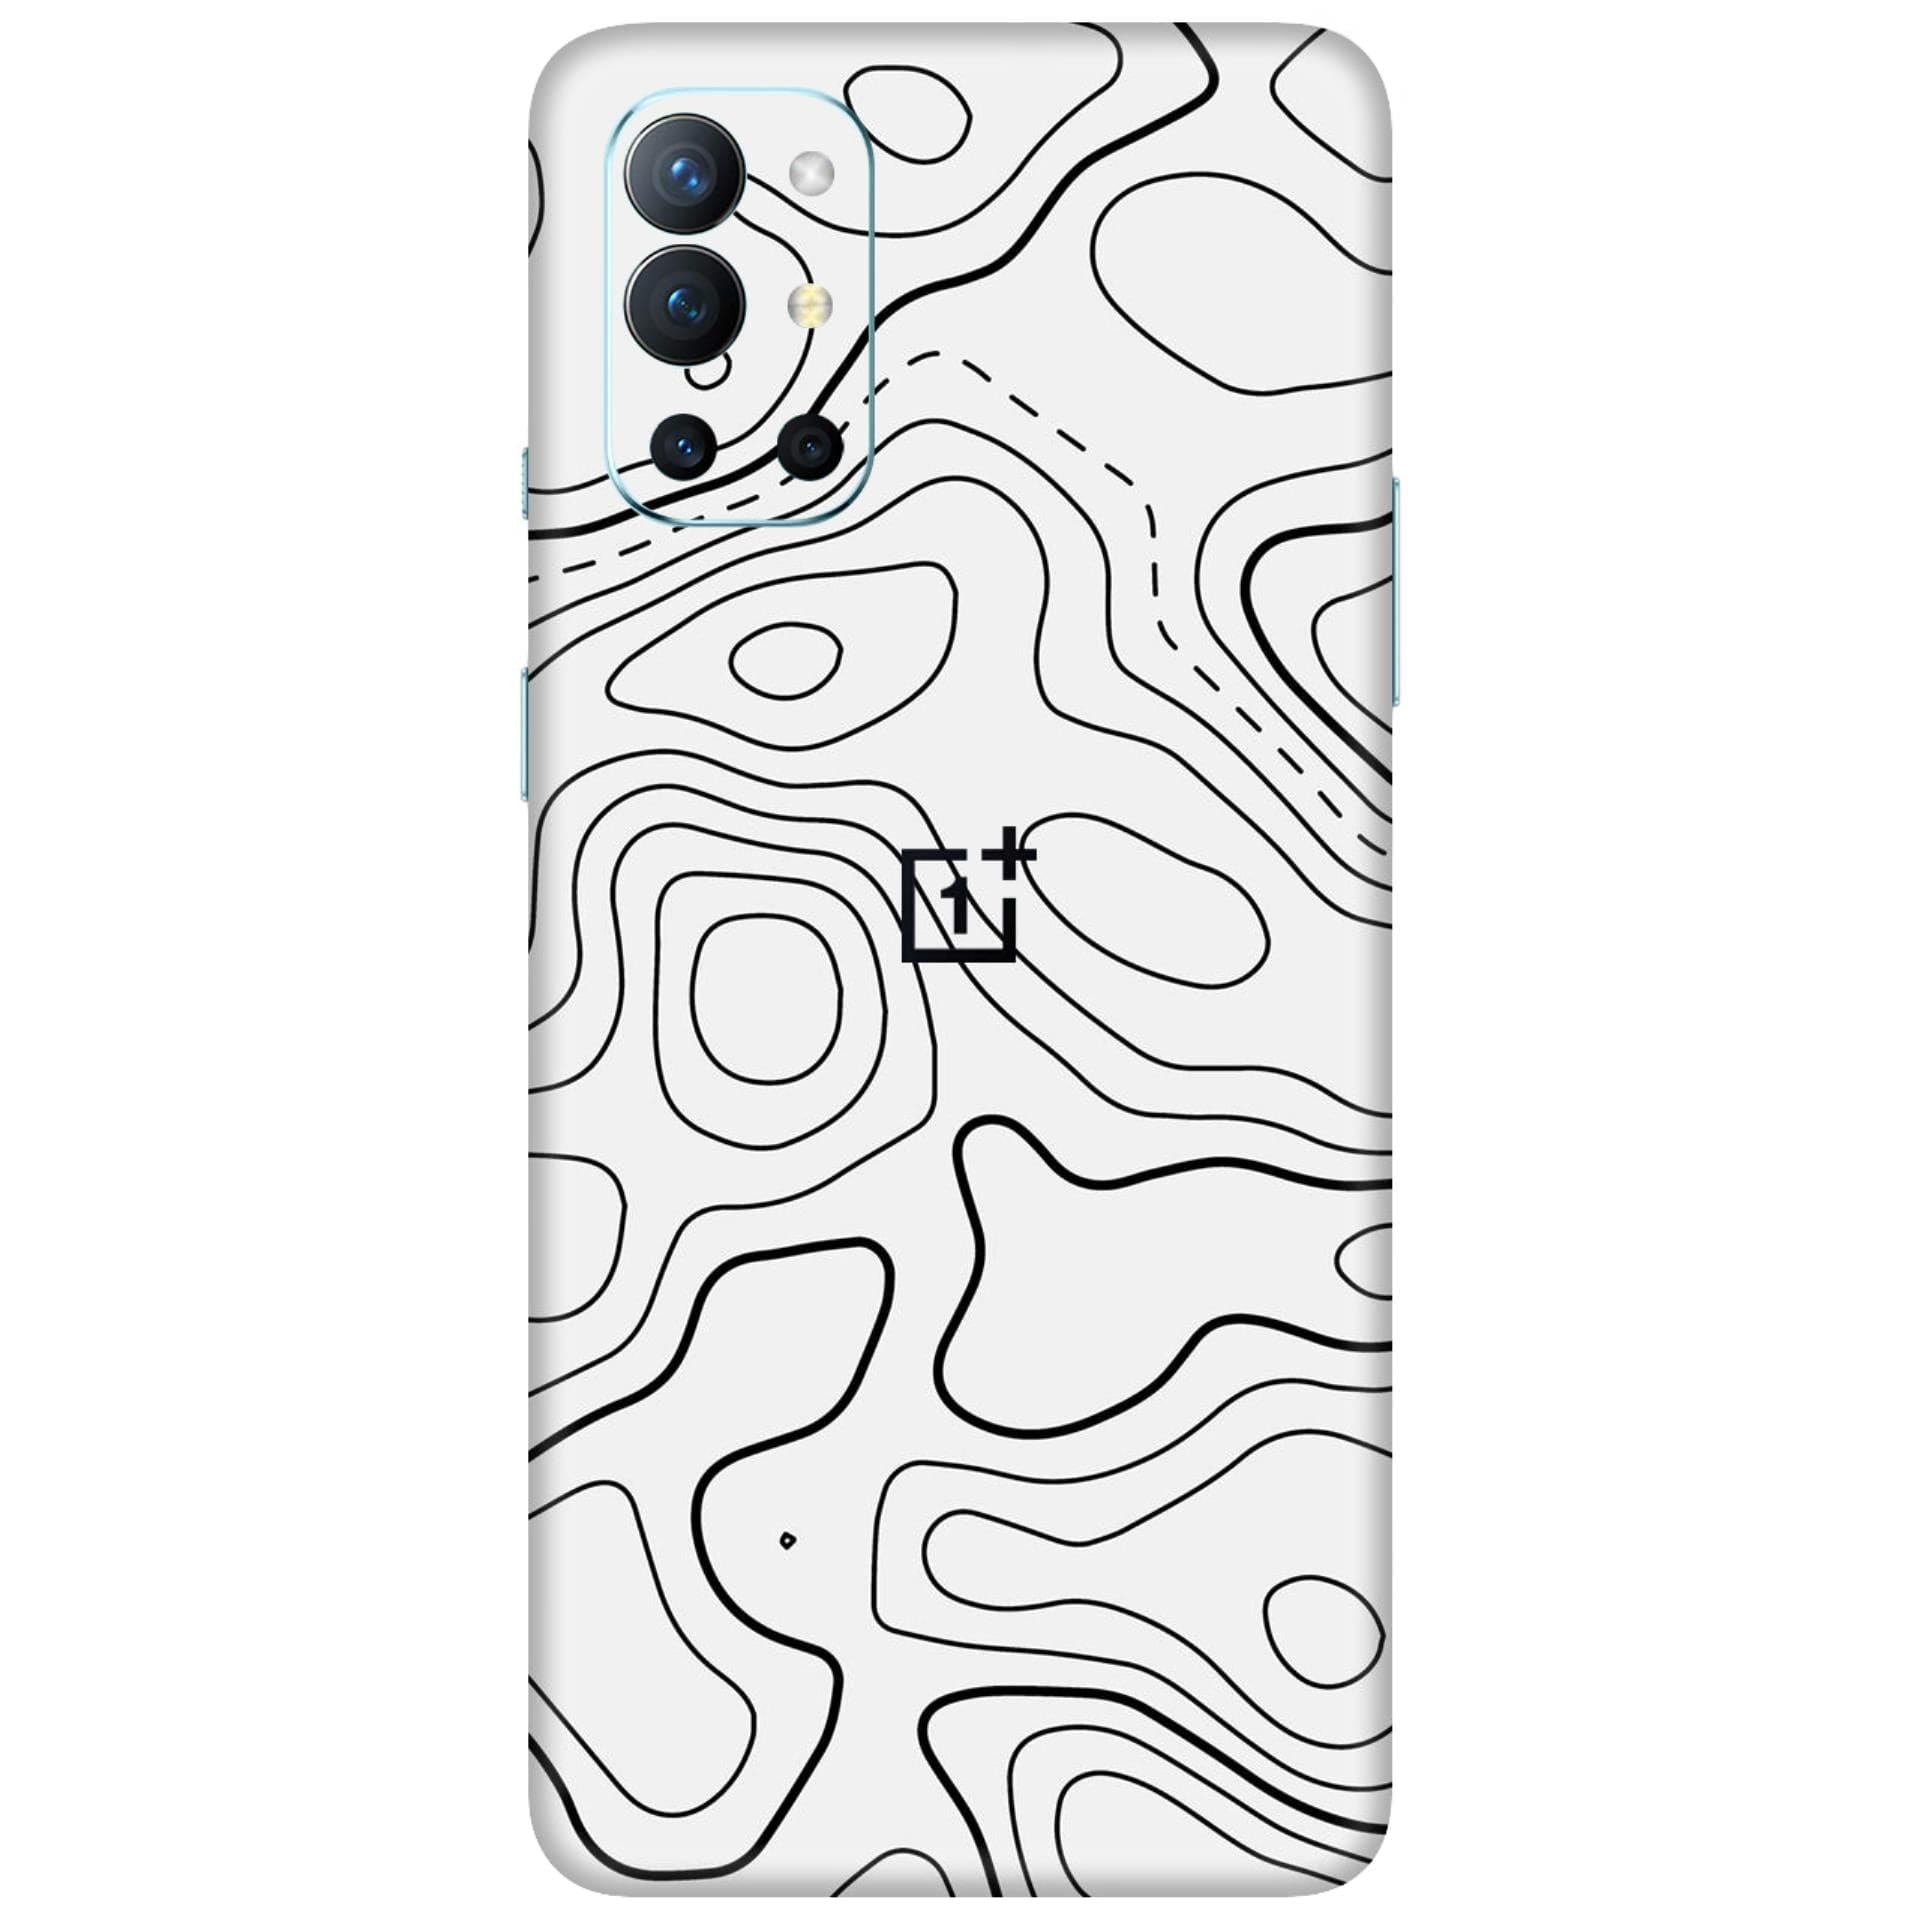 OnePlus 9R Skins & Wraps